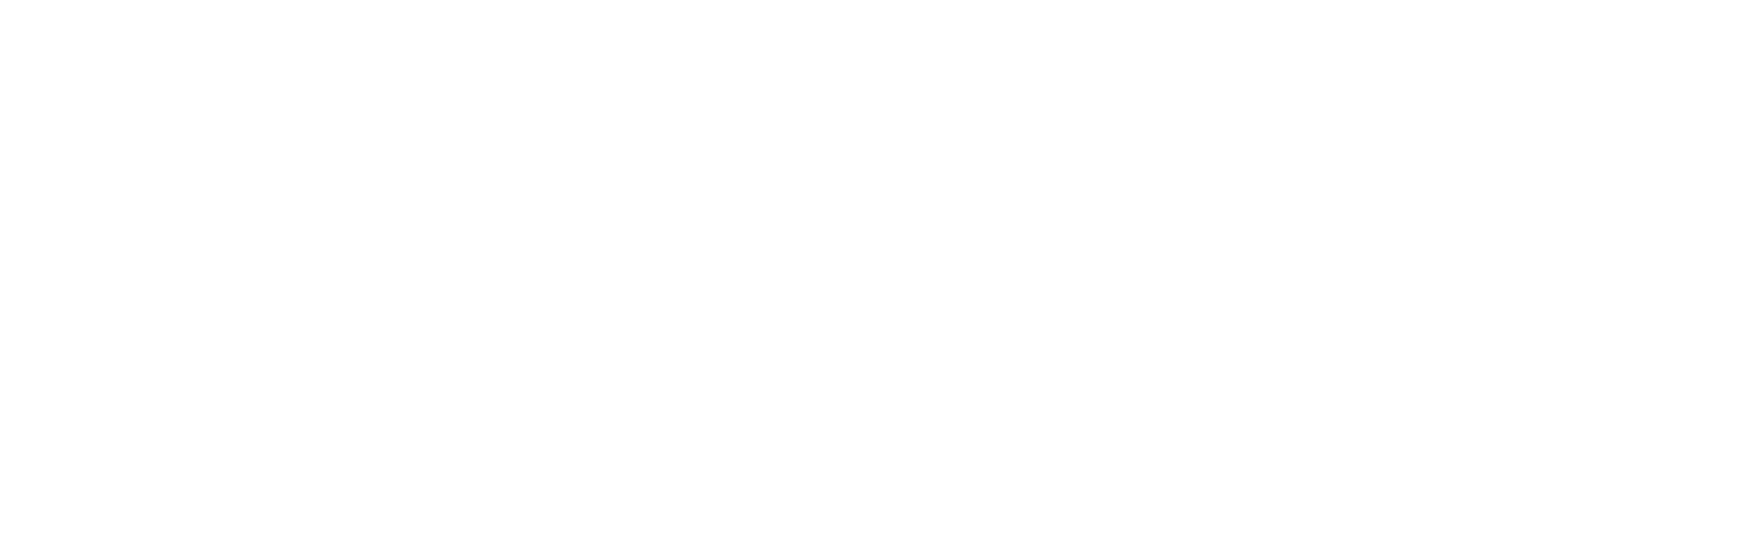 DE-demo-test-logos-v3